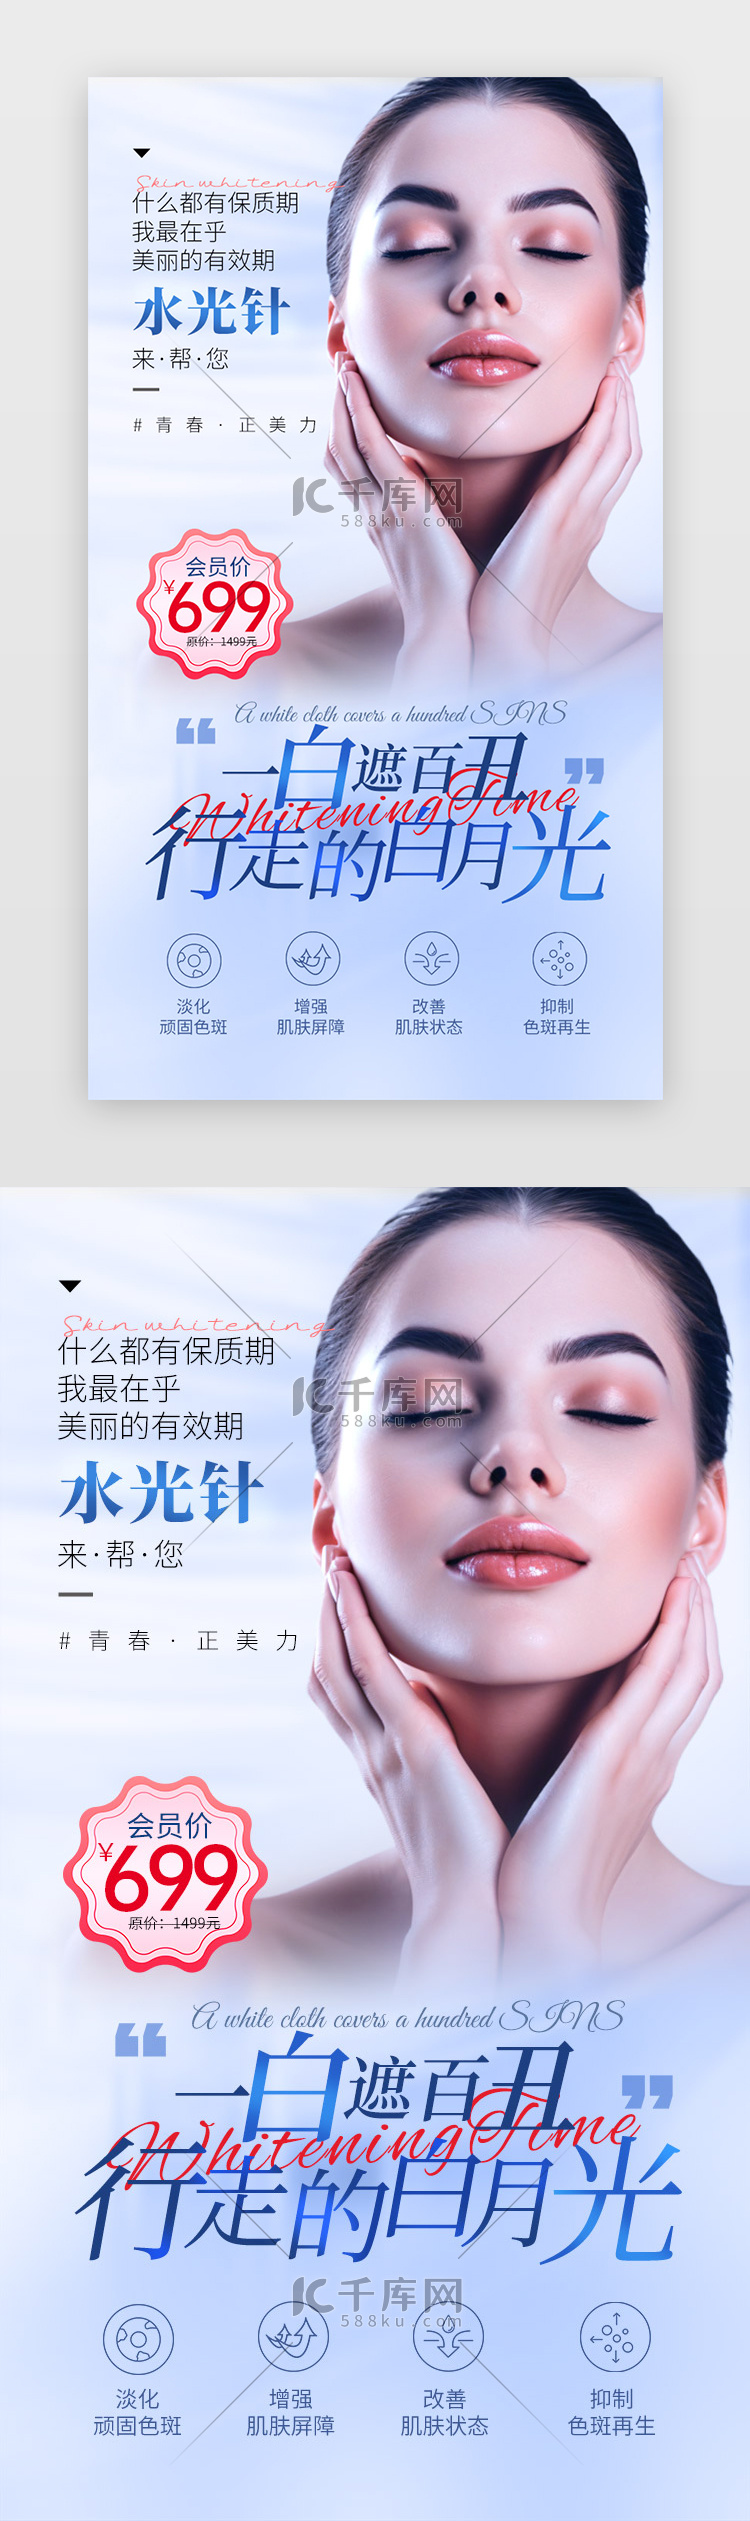 医疗美容闪屏引导页平面海报蓝色美容界面设计